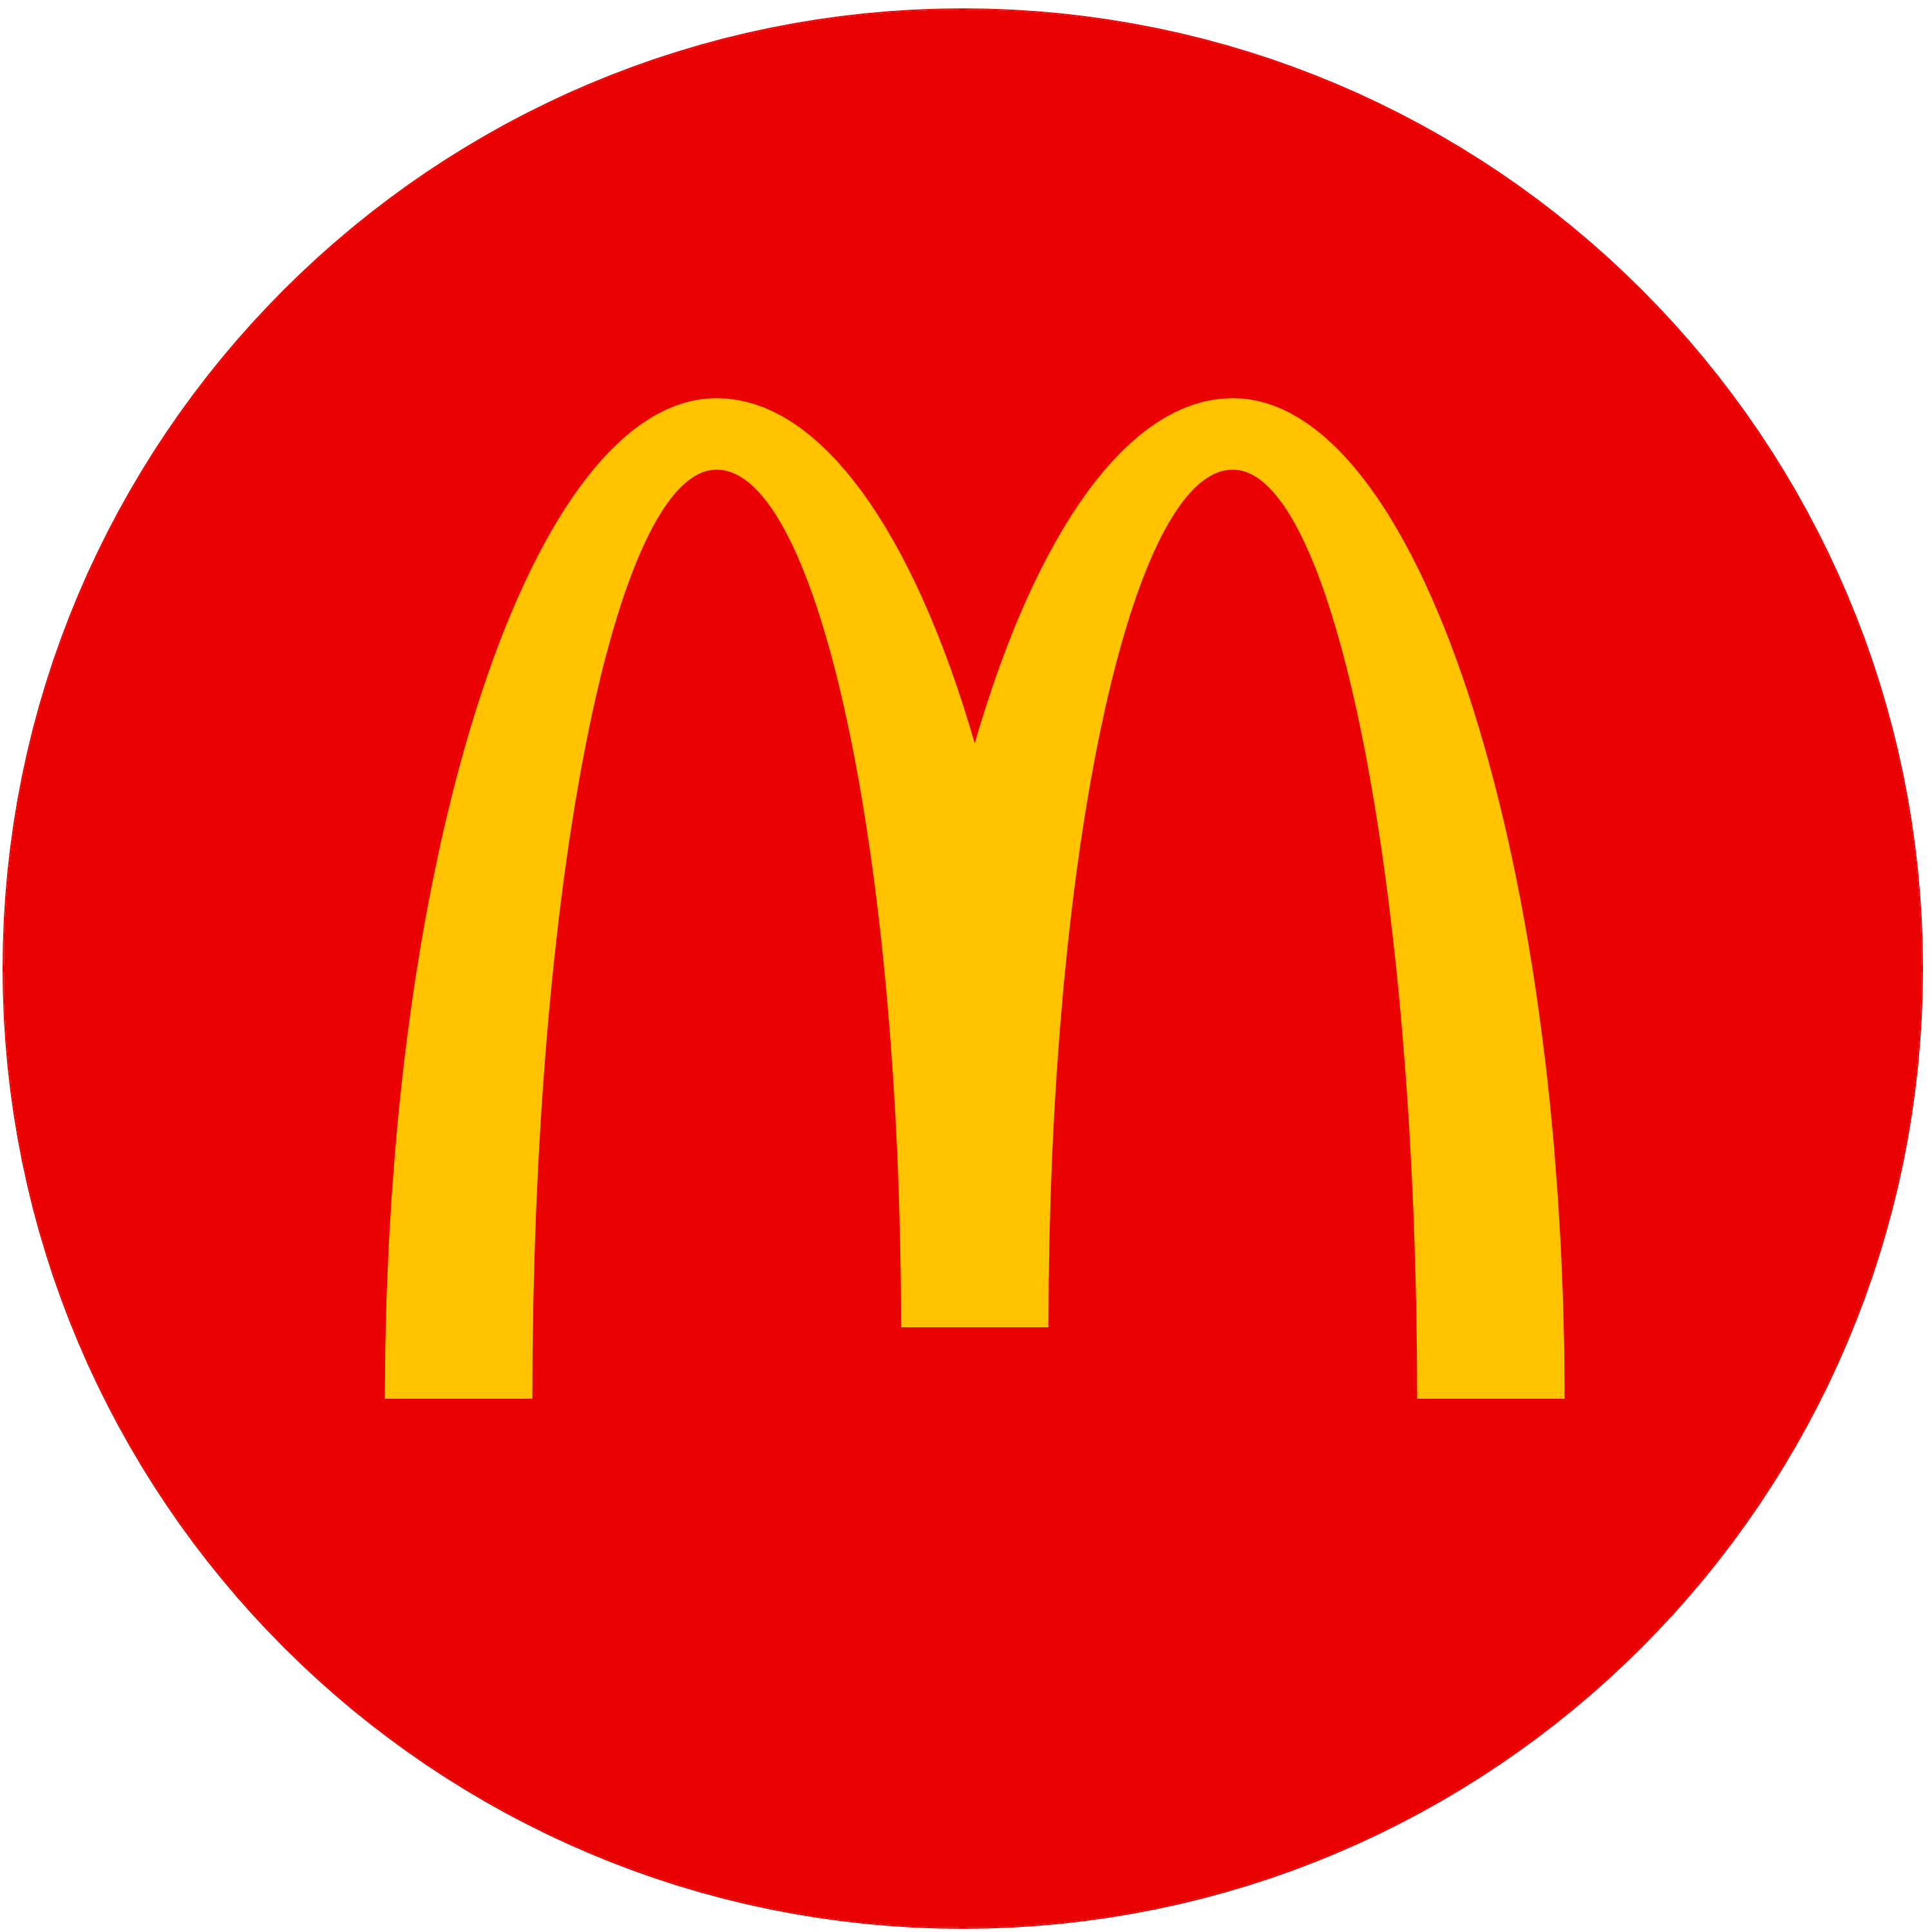 Mcdonalds-logo-on-transparent-background-PNG (1)